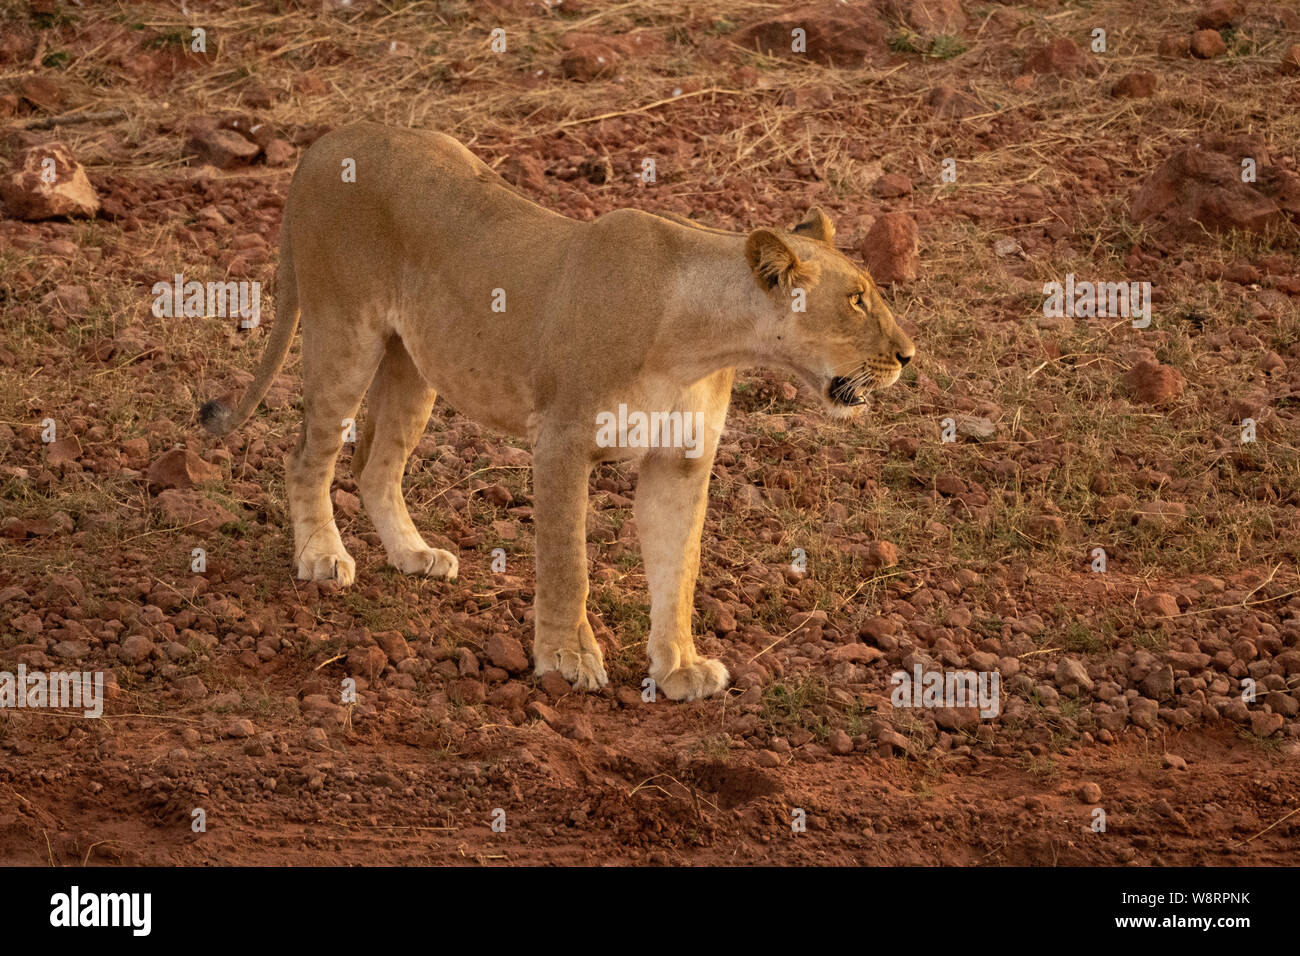 Lioness, Panthera leo, prowling. Photographed at Lake Kariba National Park, Zimbabwe Stock Photo